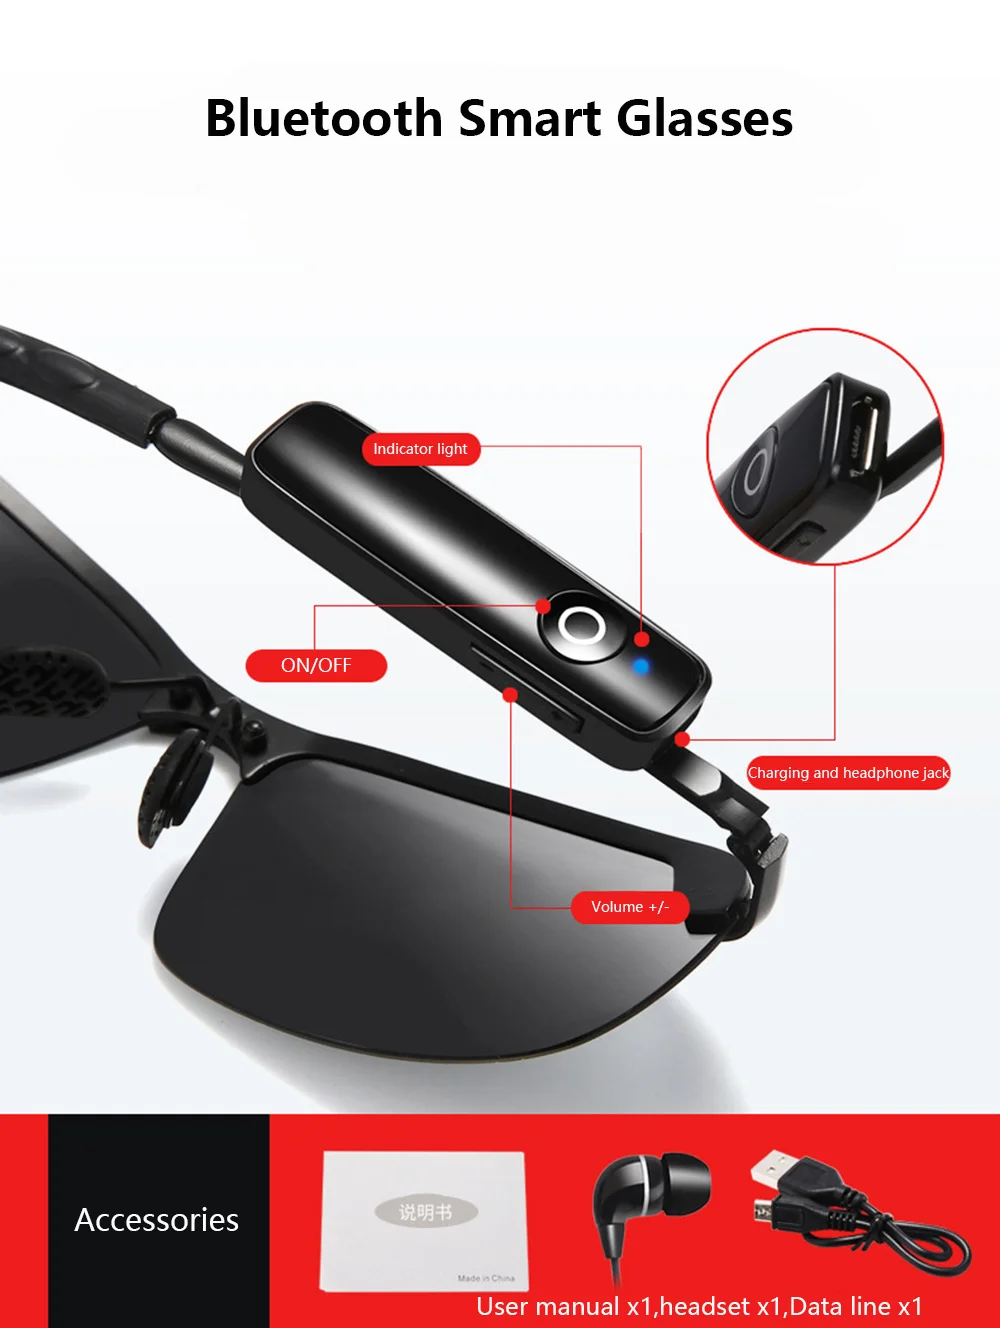 저렴한 블루투스 편광 선글라스, 스마트 스테레오 안경, 레트로, 음악 듣기, 휴대 전화 연결